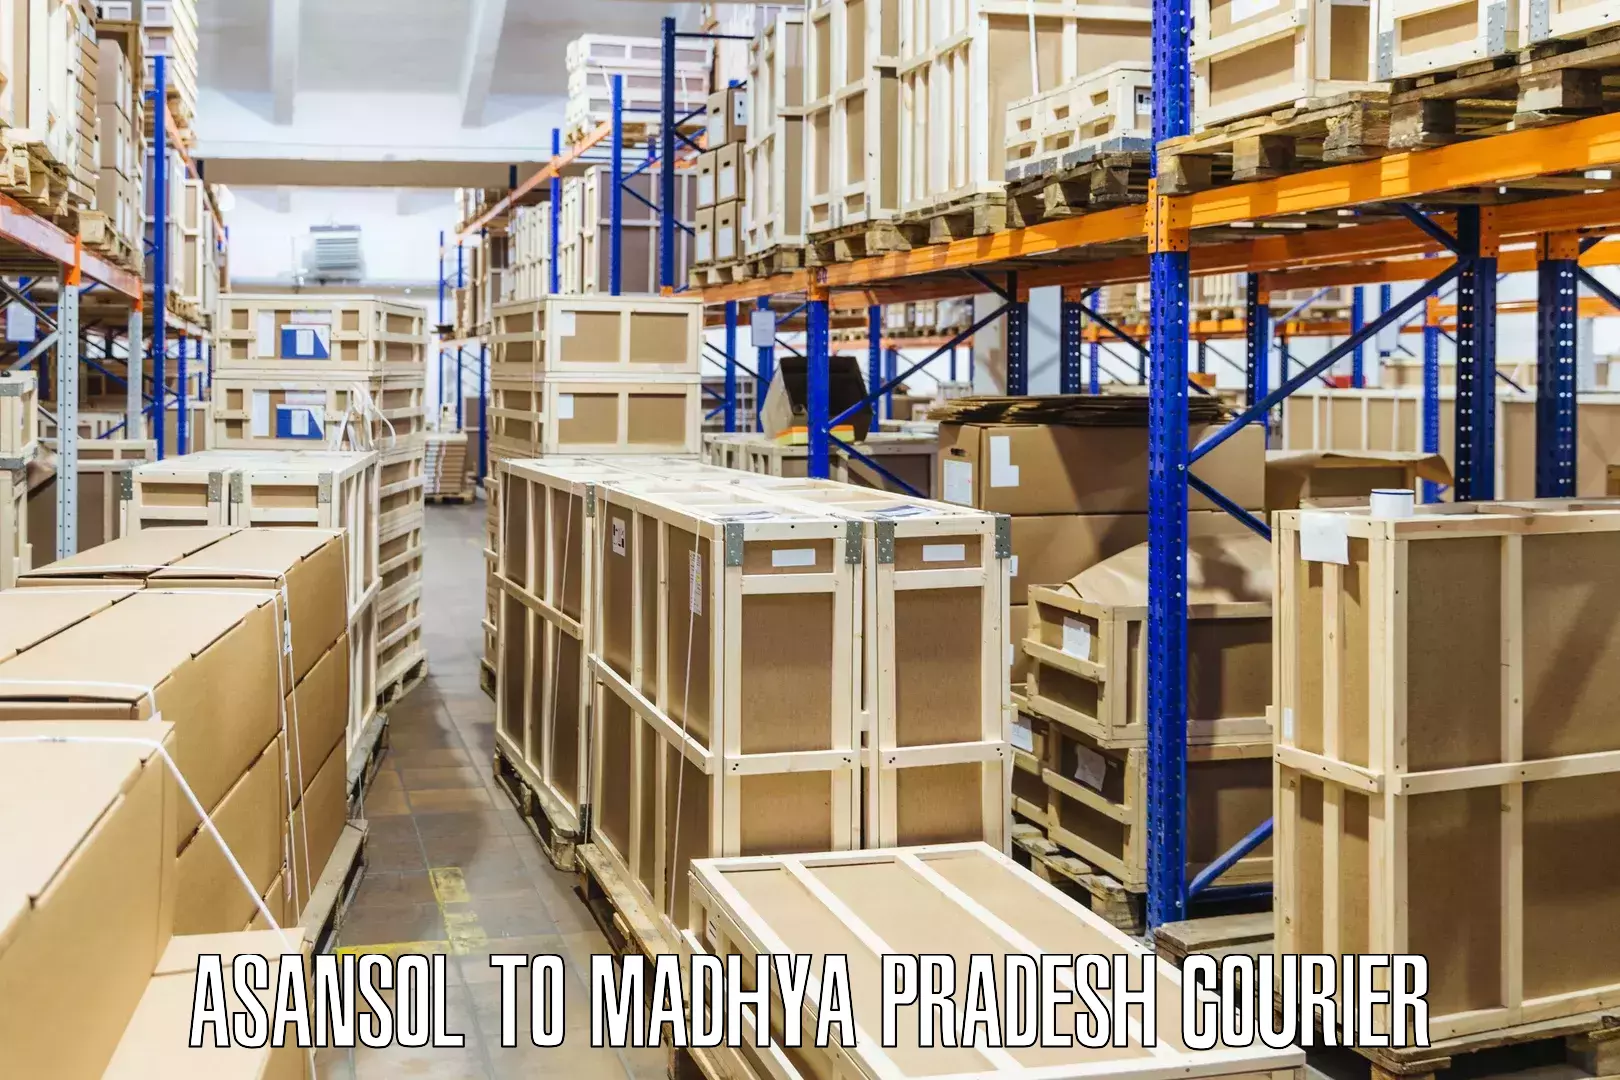 Professional parcel services Asansol to Narsinghpur